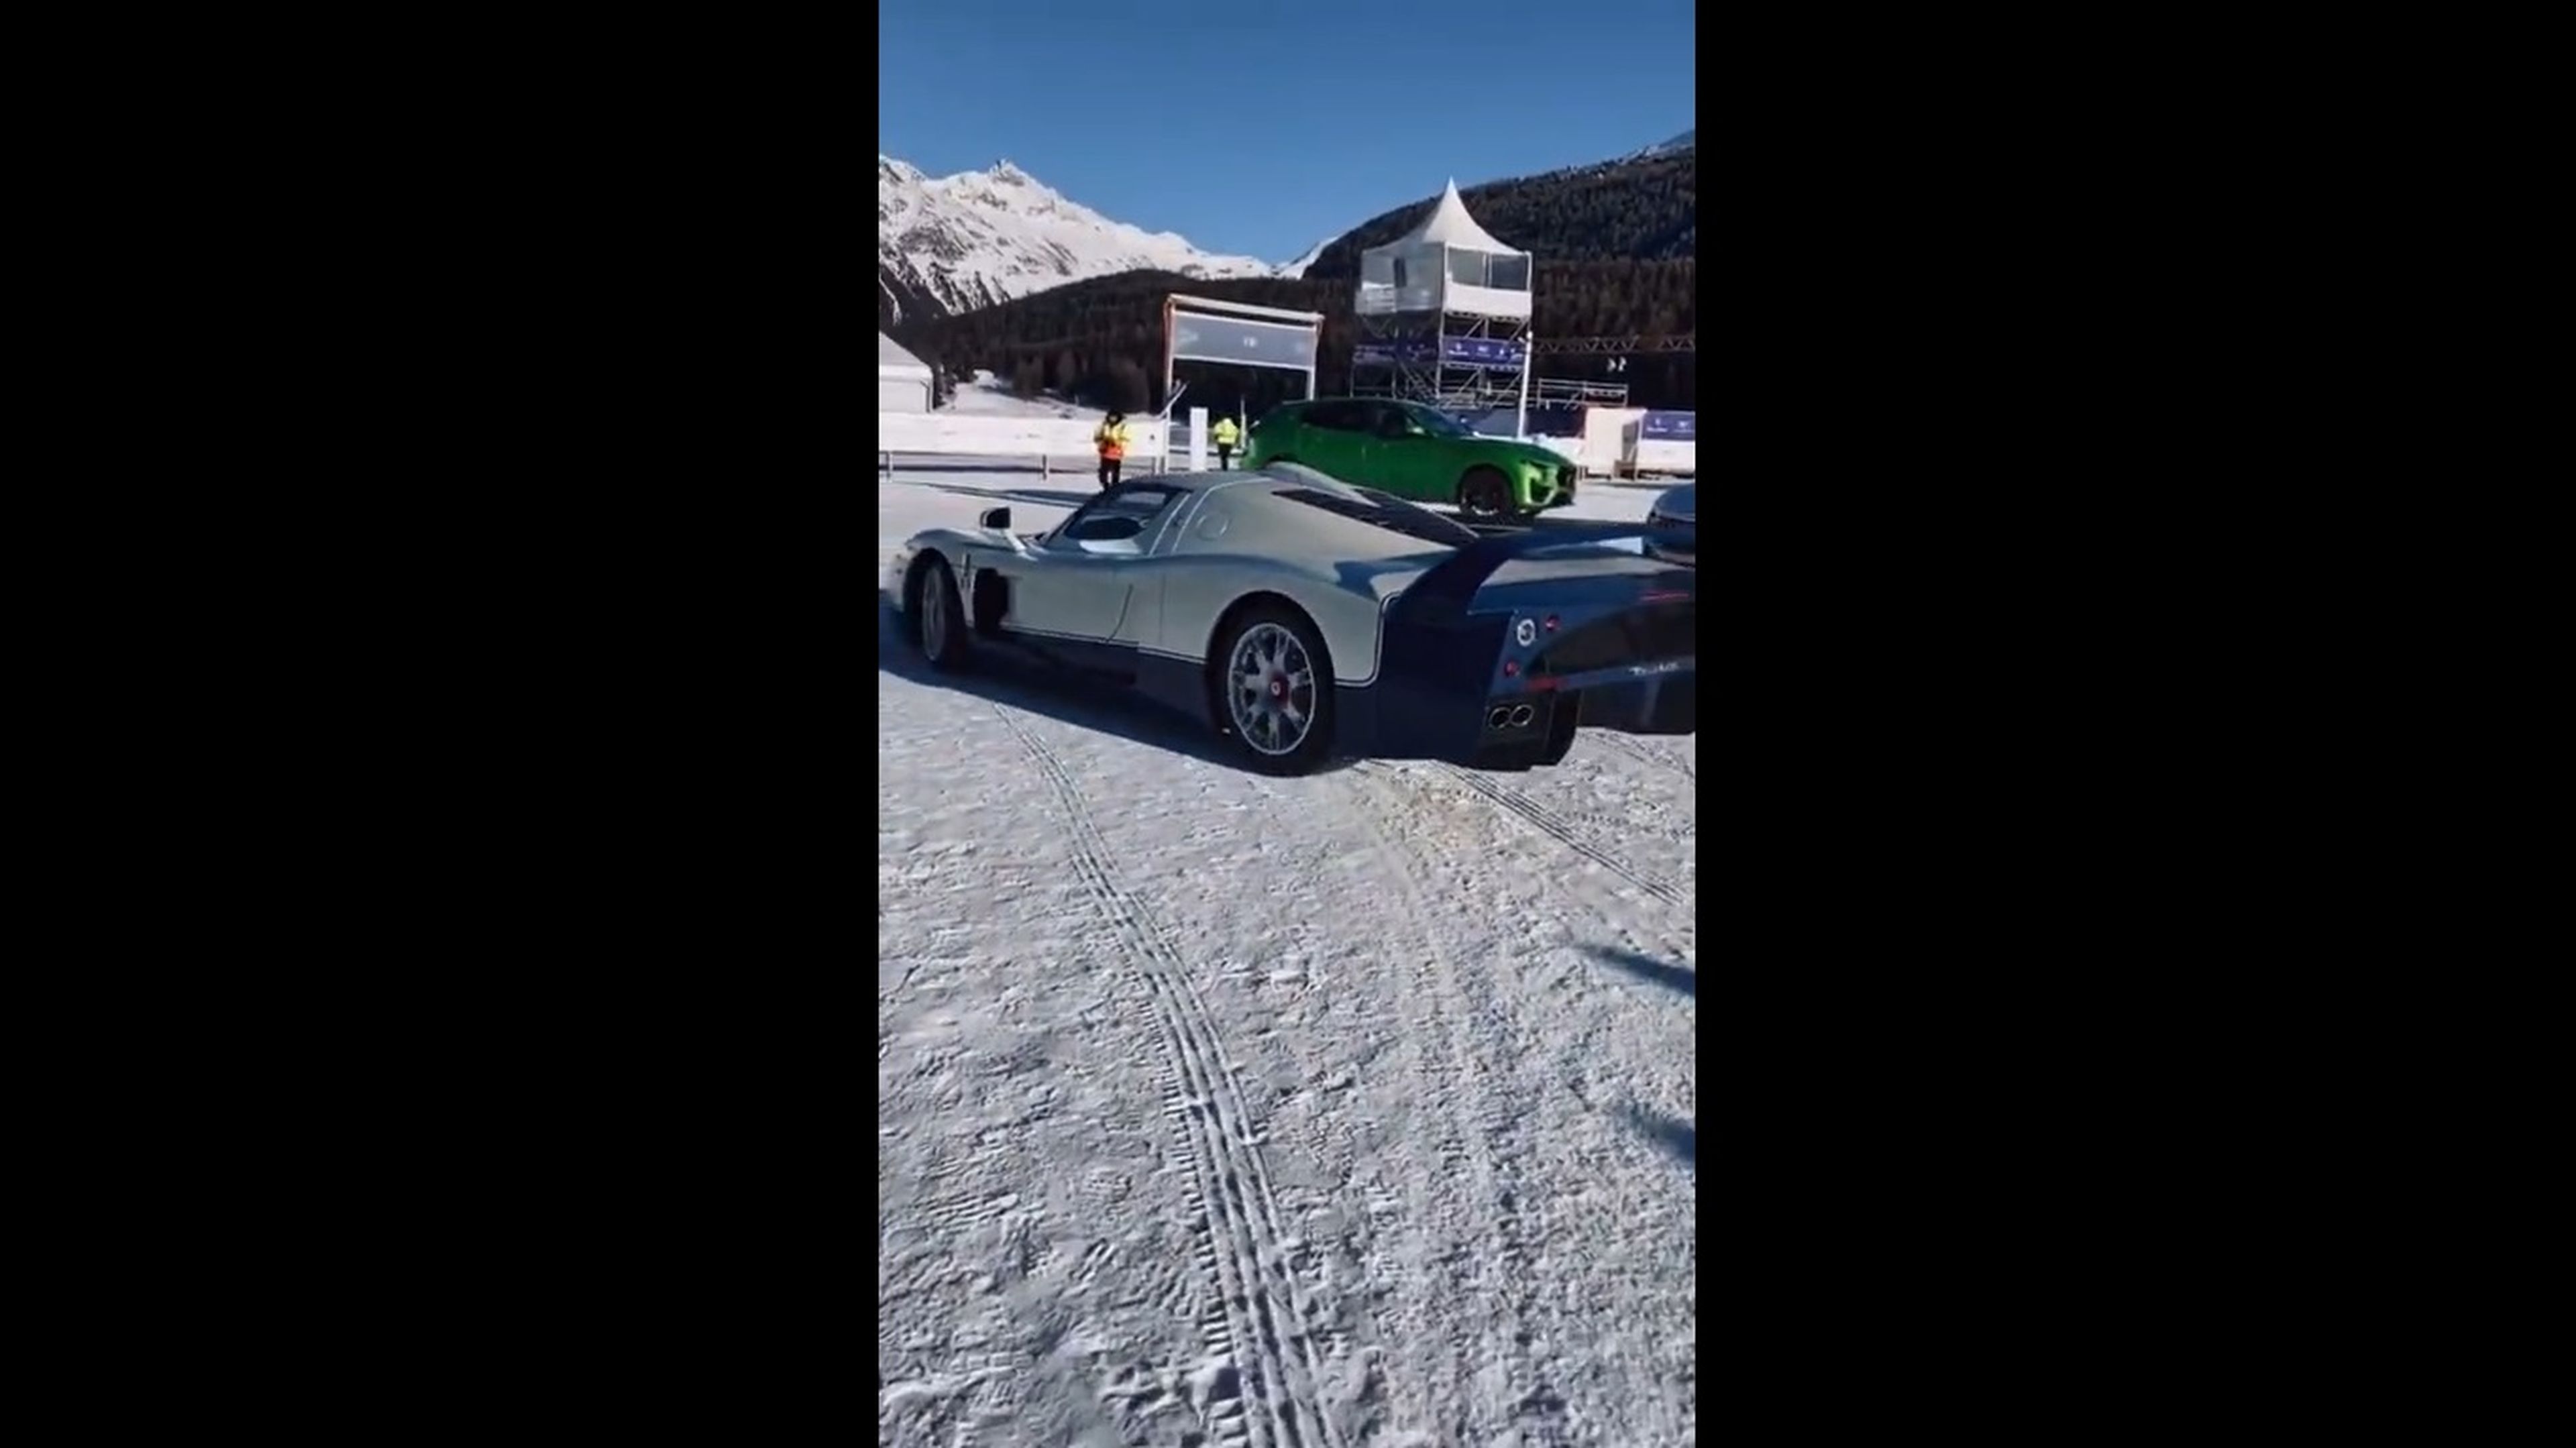 VÍDEO: Conduce en nieve un Maserati MC12, ¡y derrapa con él!